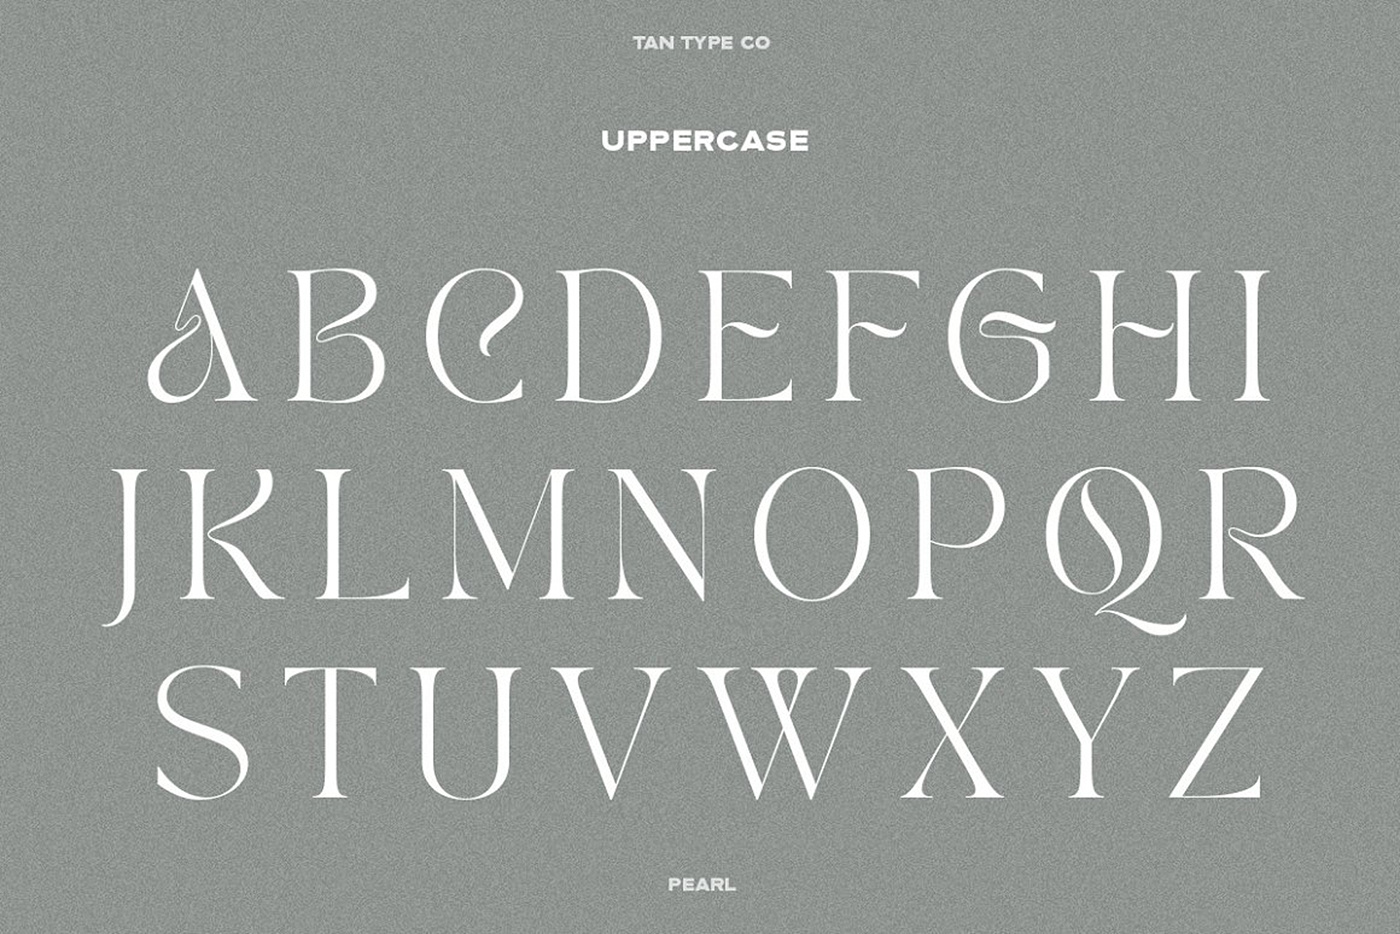 classy font elegant font Fashion font hipster font modern palyful font serif type design Typeface vintage font